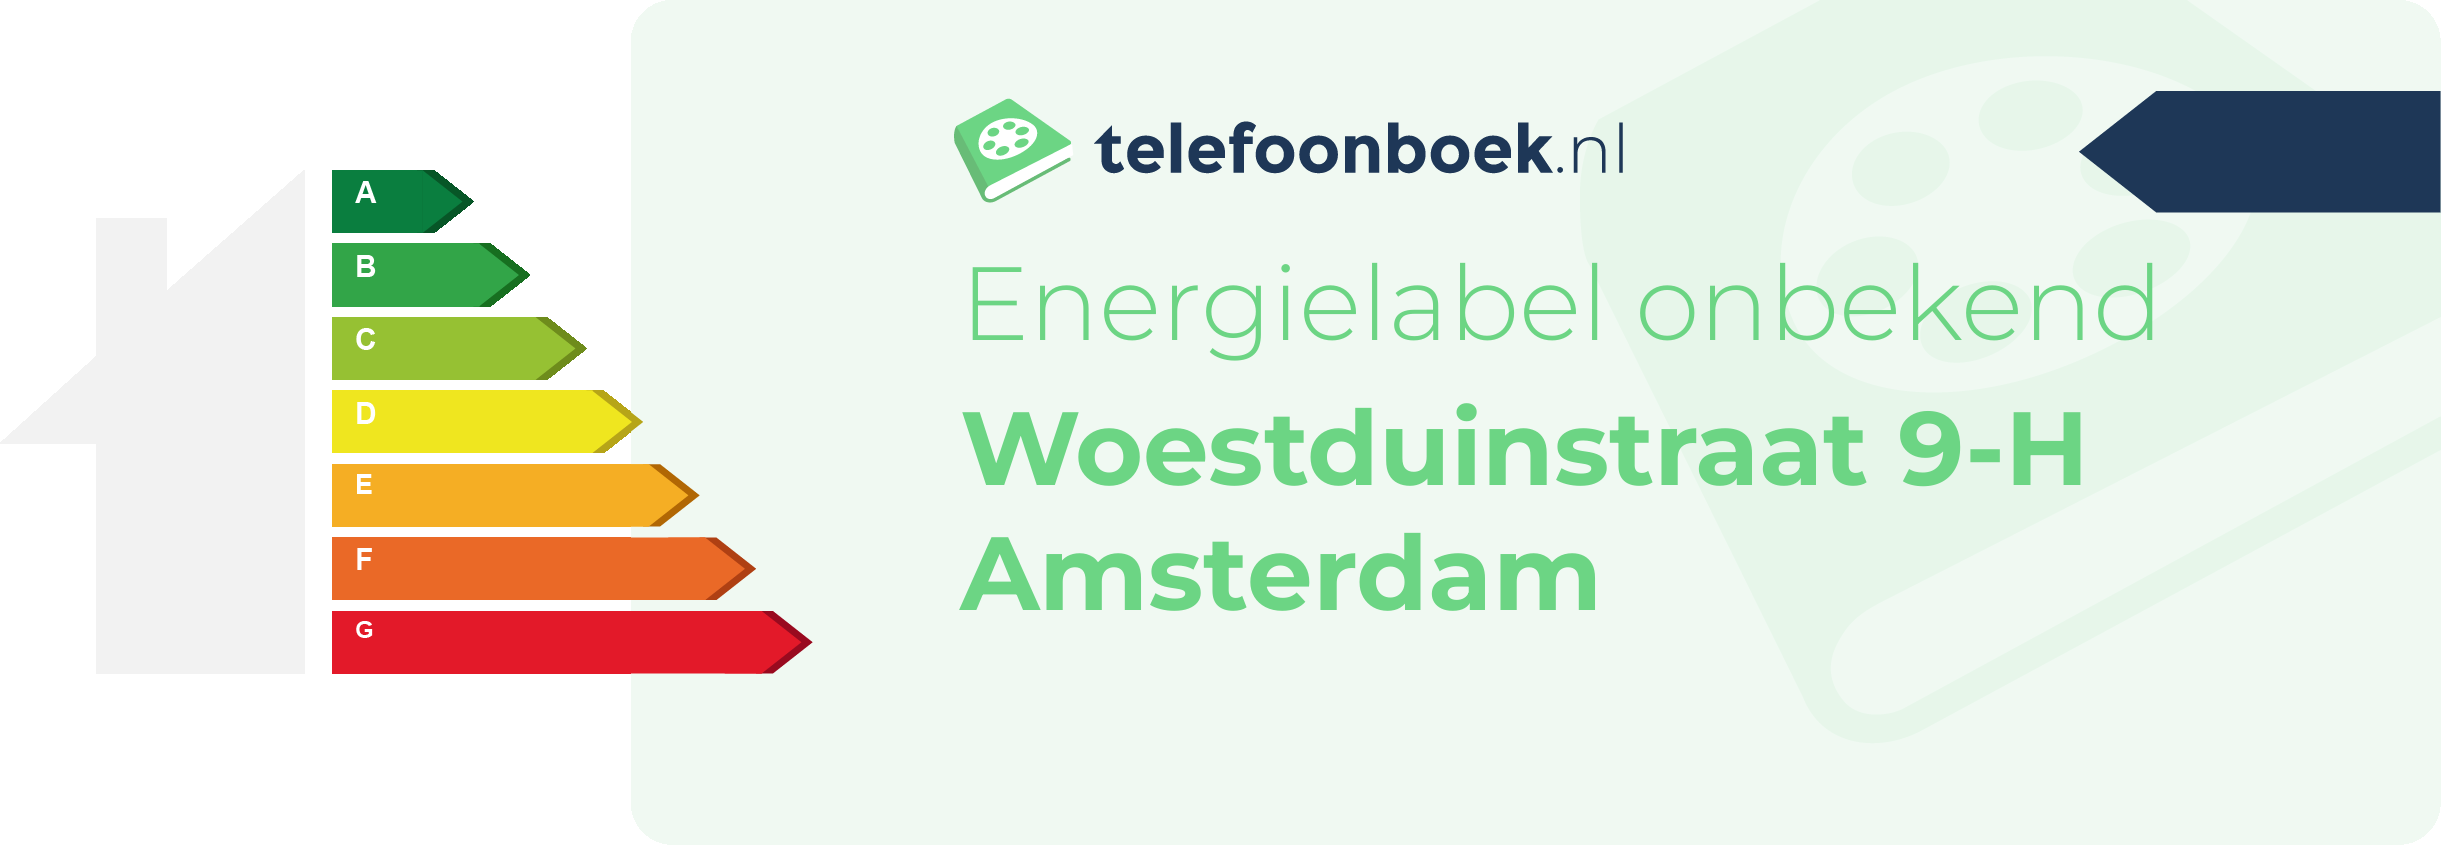 Energielabel Woestduinstraat 9-H Amsterdam